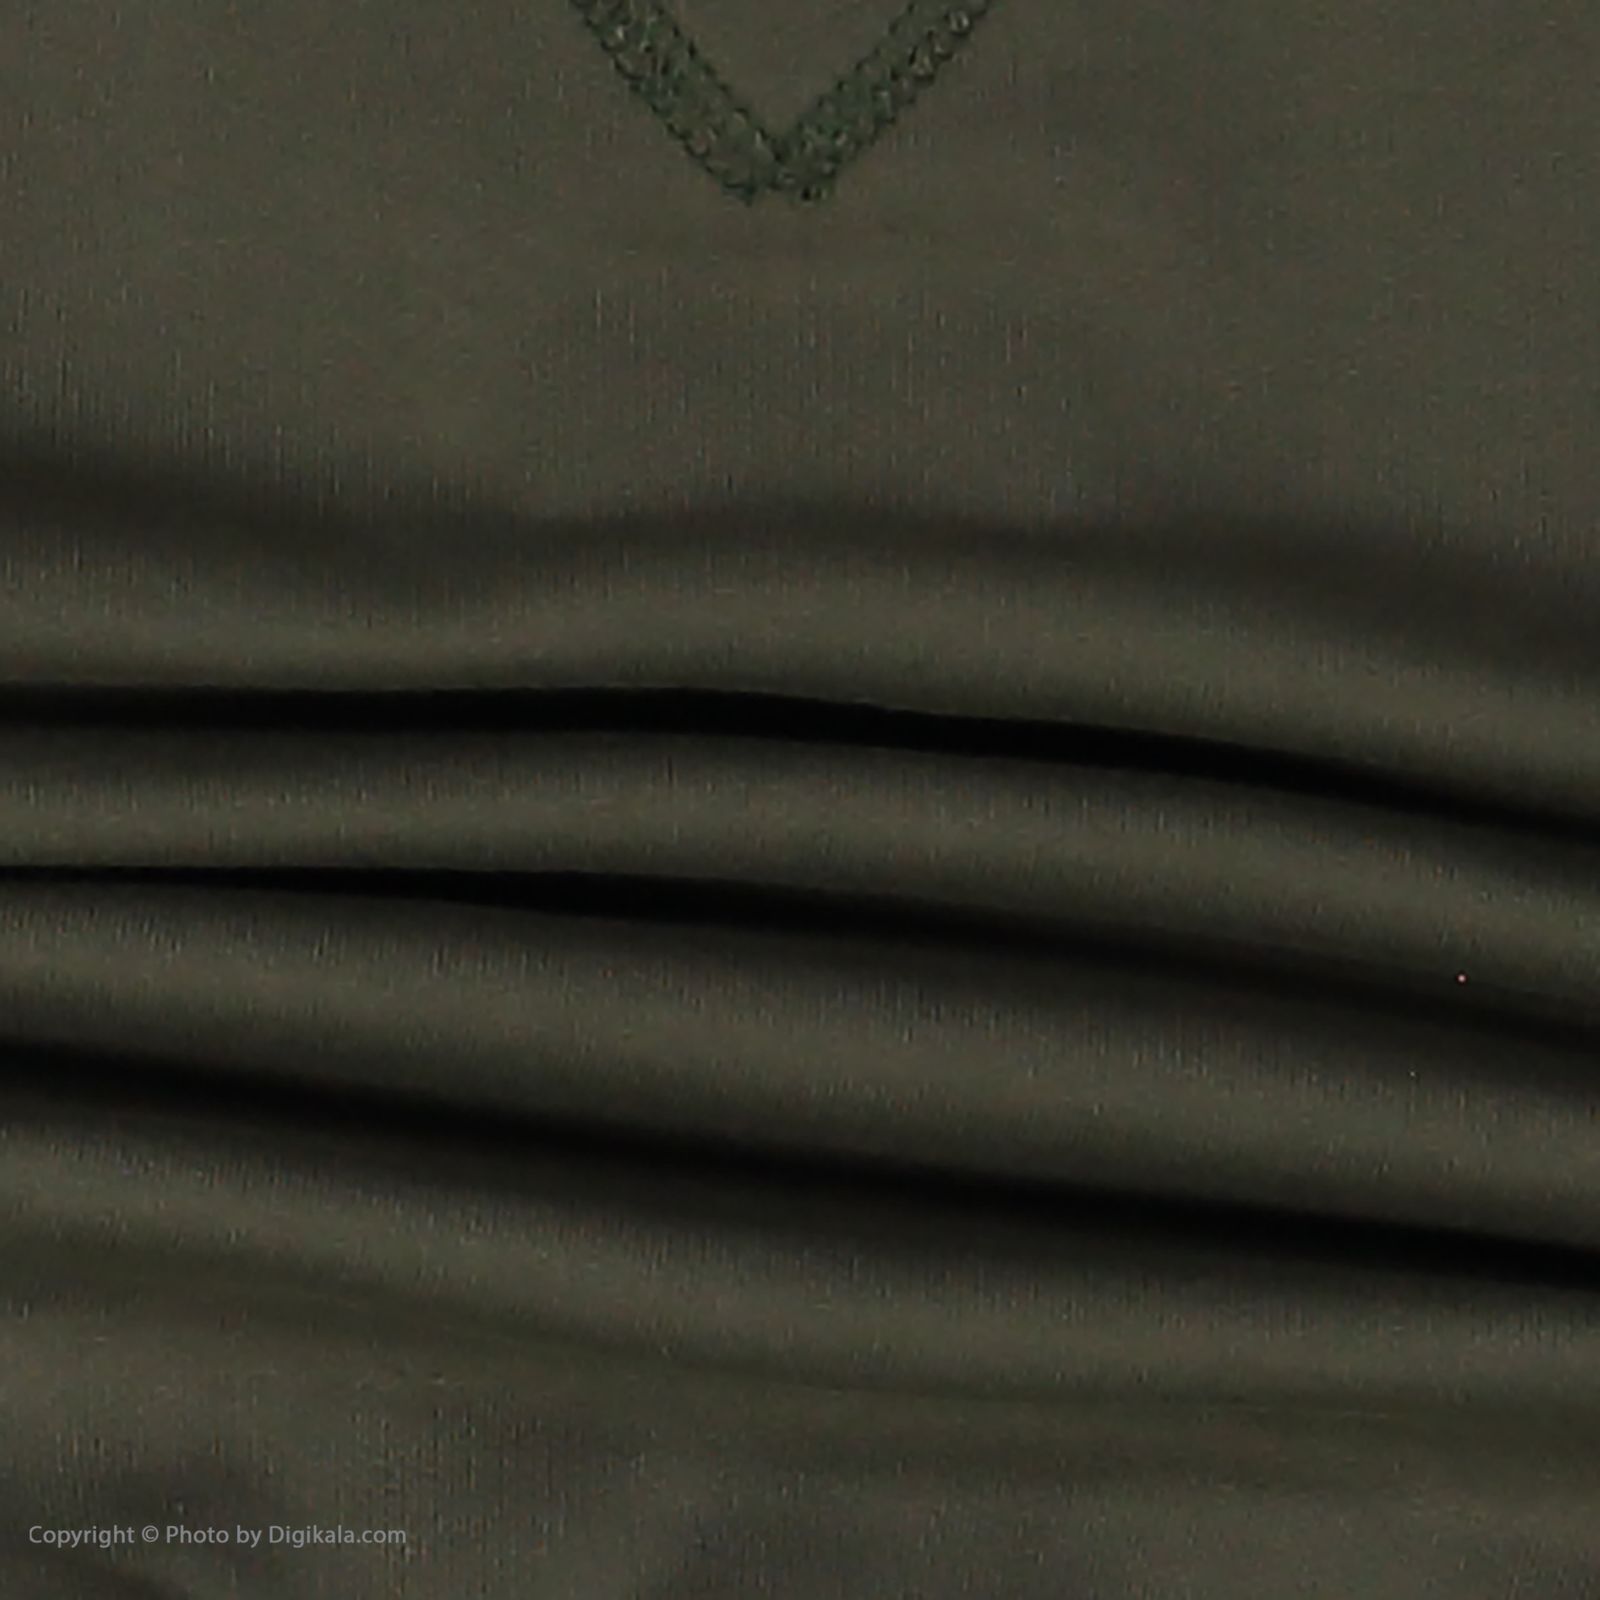 ست تی شرت و شلوار پسرانه نامدارز مدل 2021106-49 - سبز ارتشی - 6